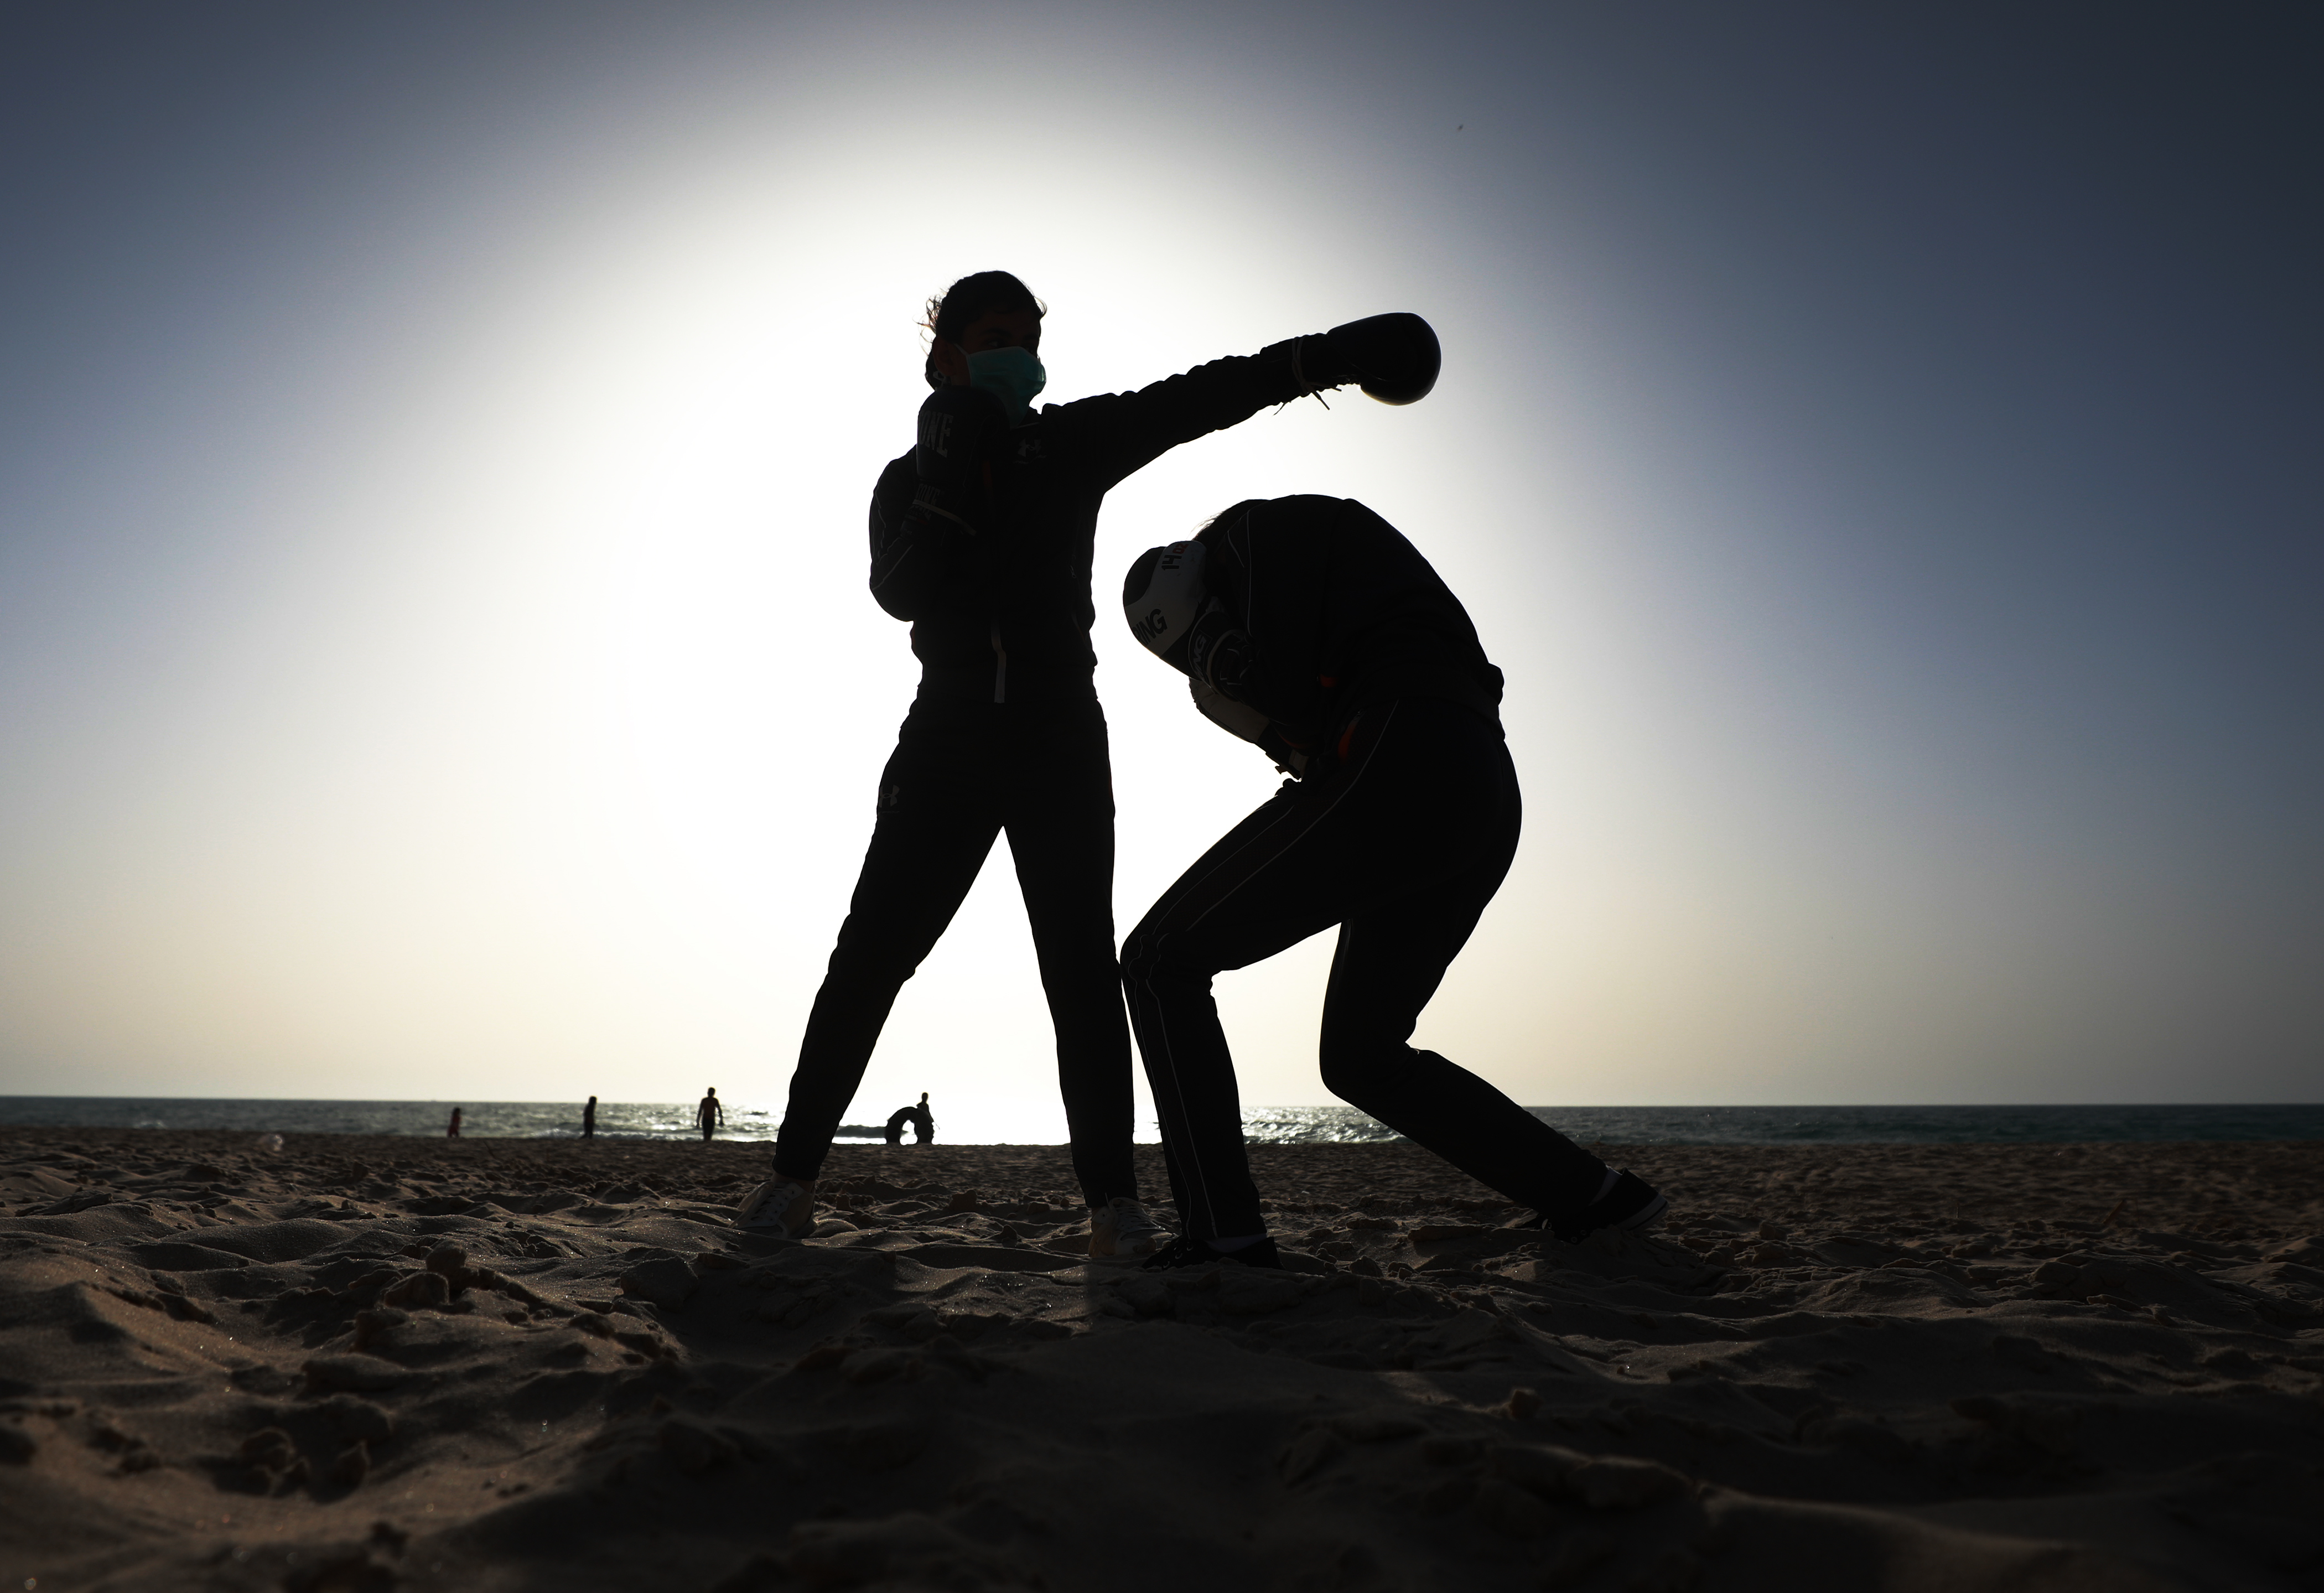 Palestinian boxers train at Gazan beach due to coronavirus